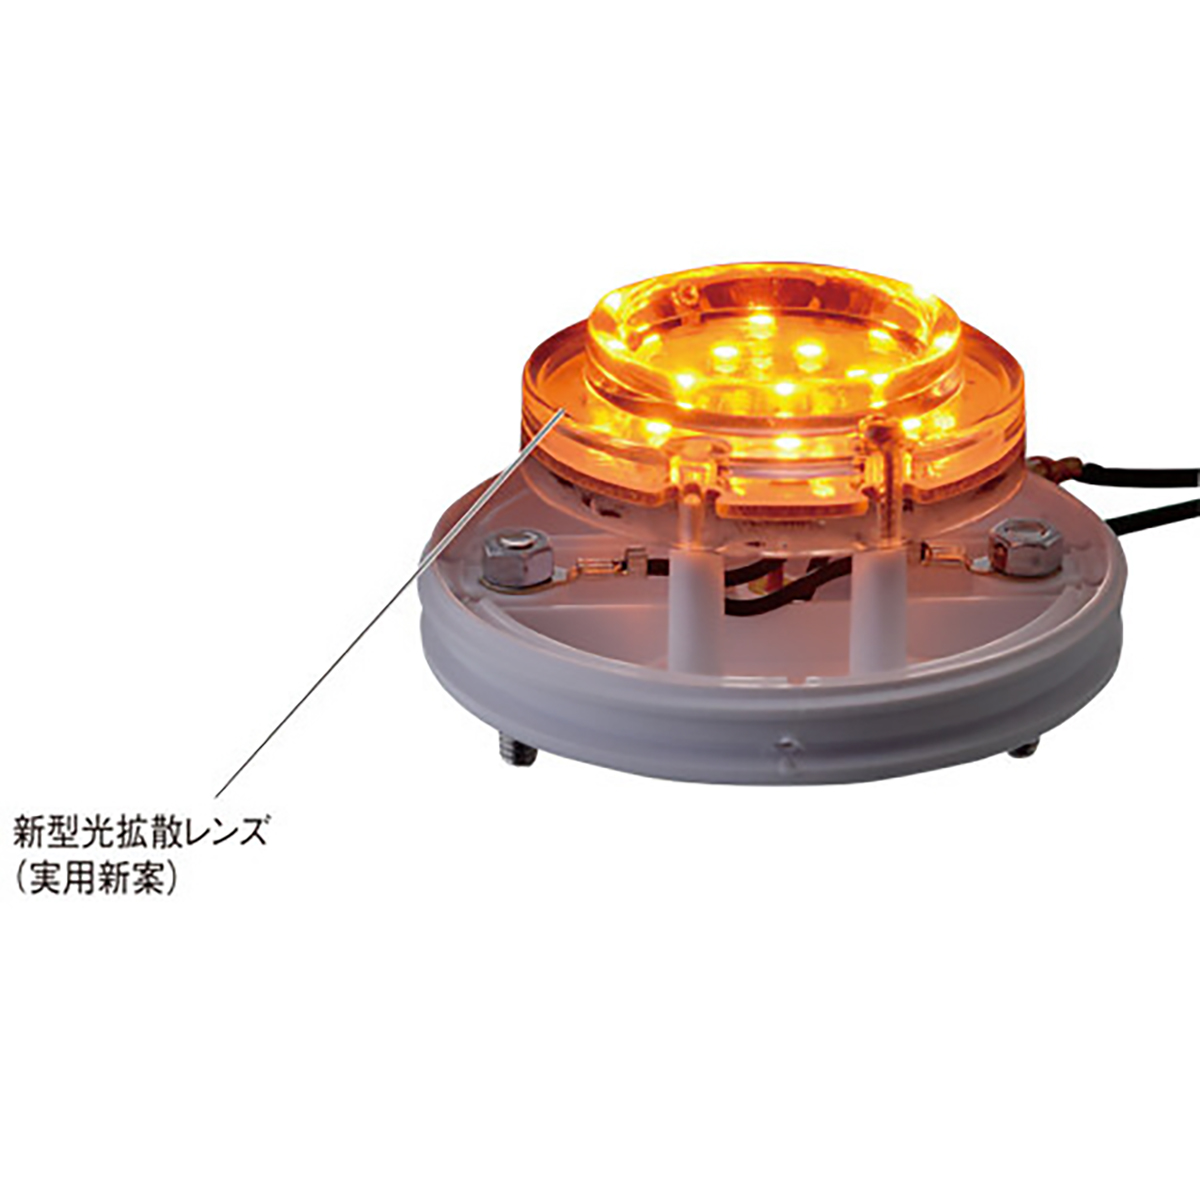 マーカー ランプ SMD LED プラスチックレンズ オレンジ DC12/DC24V 防水